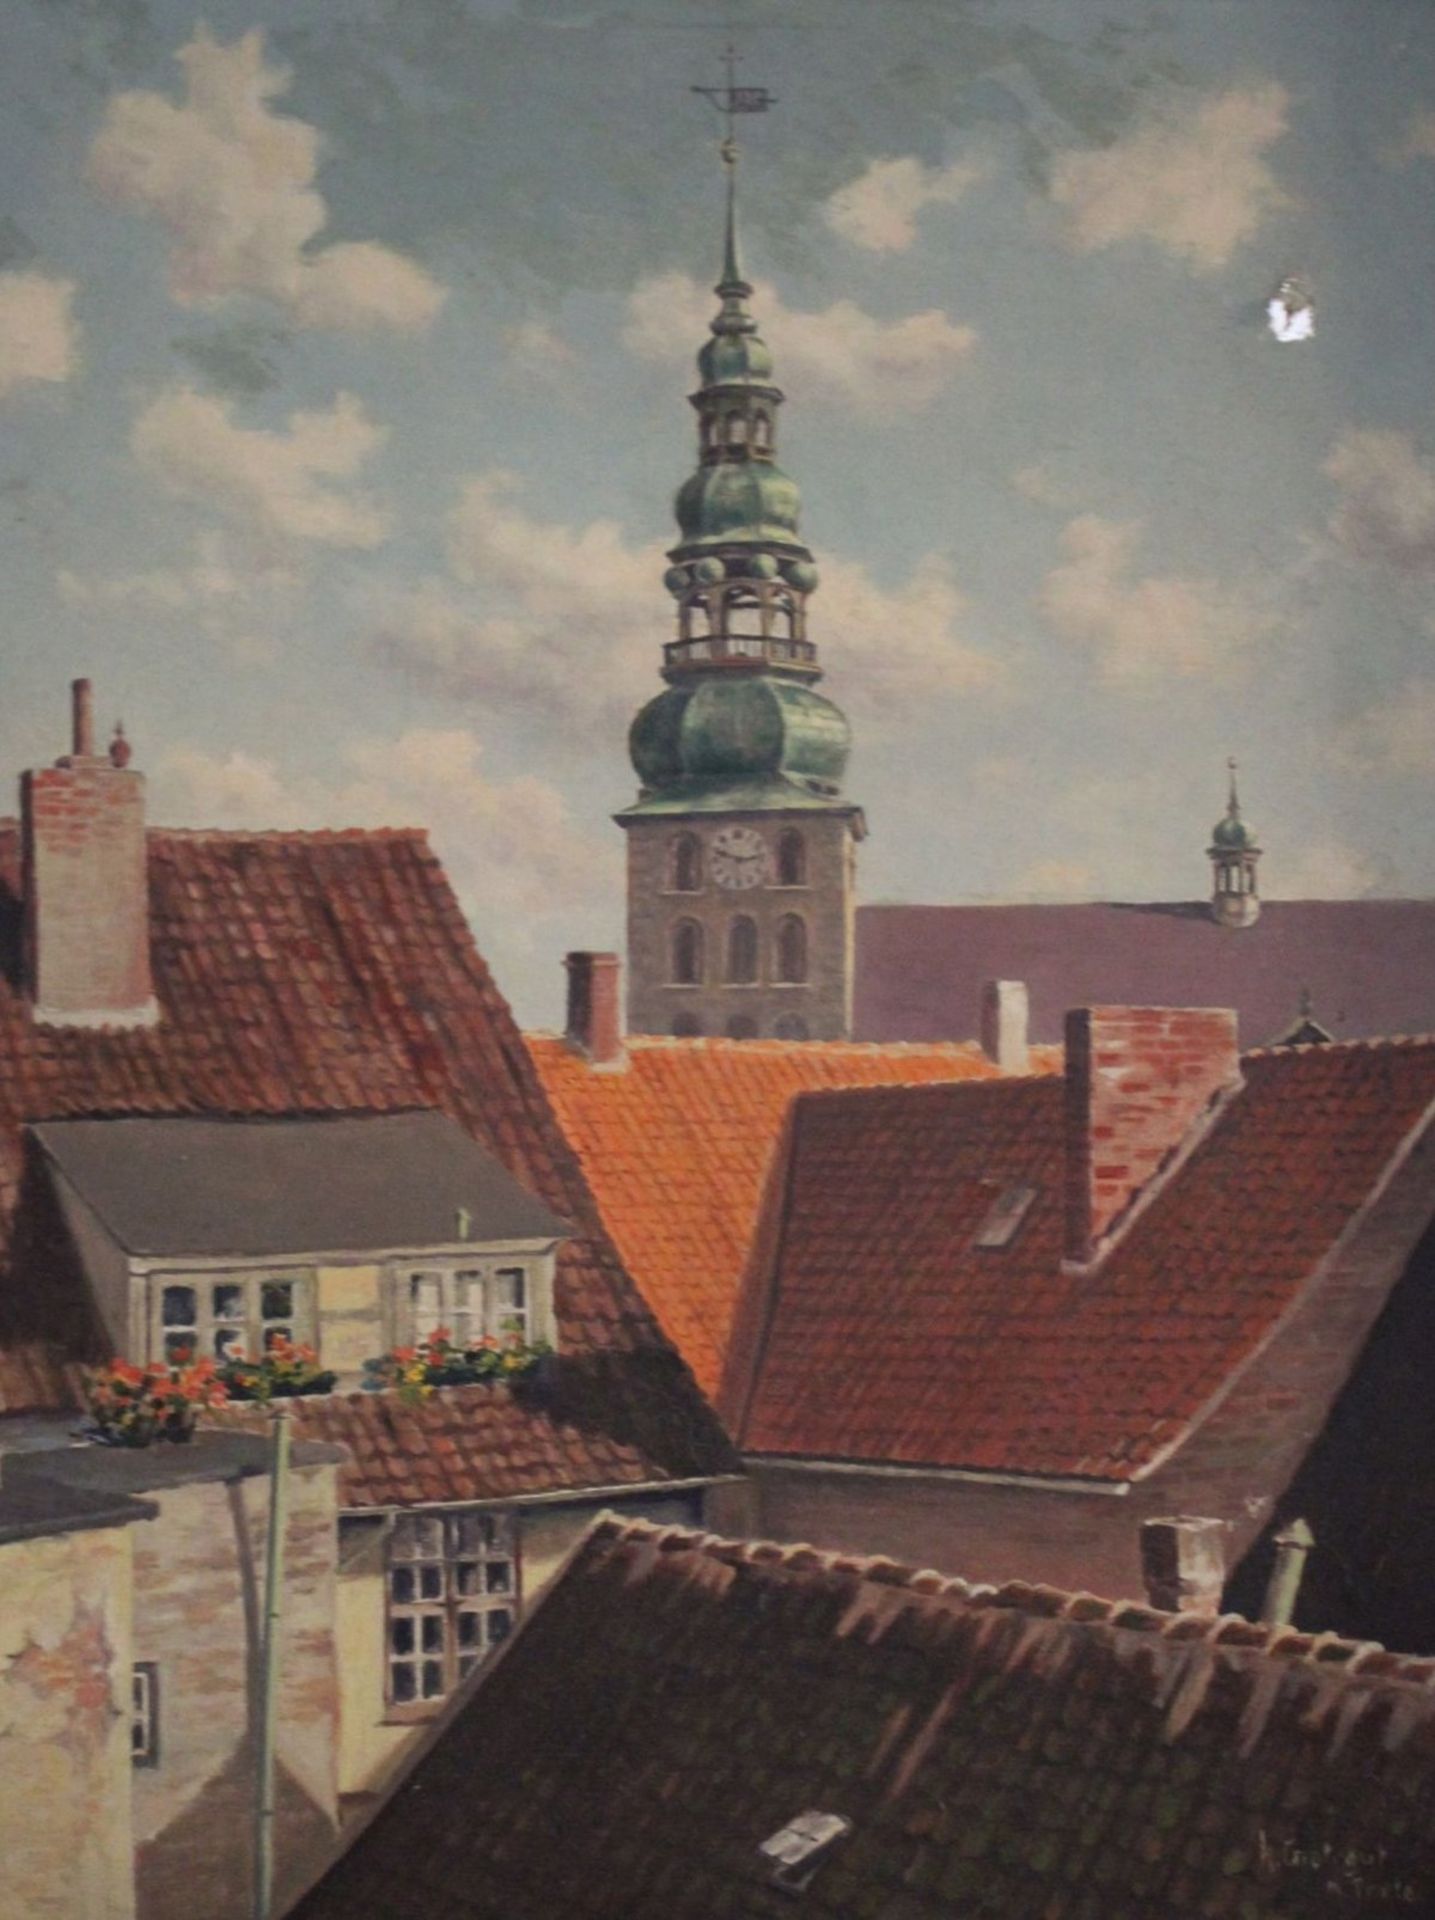 Herbert Grotegut(XX), Blick über Dächer, Öl/Leinwand, Leinwand mit Loch, restaurierungs bedürftig,